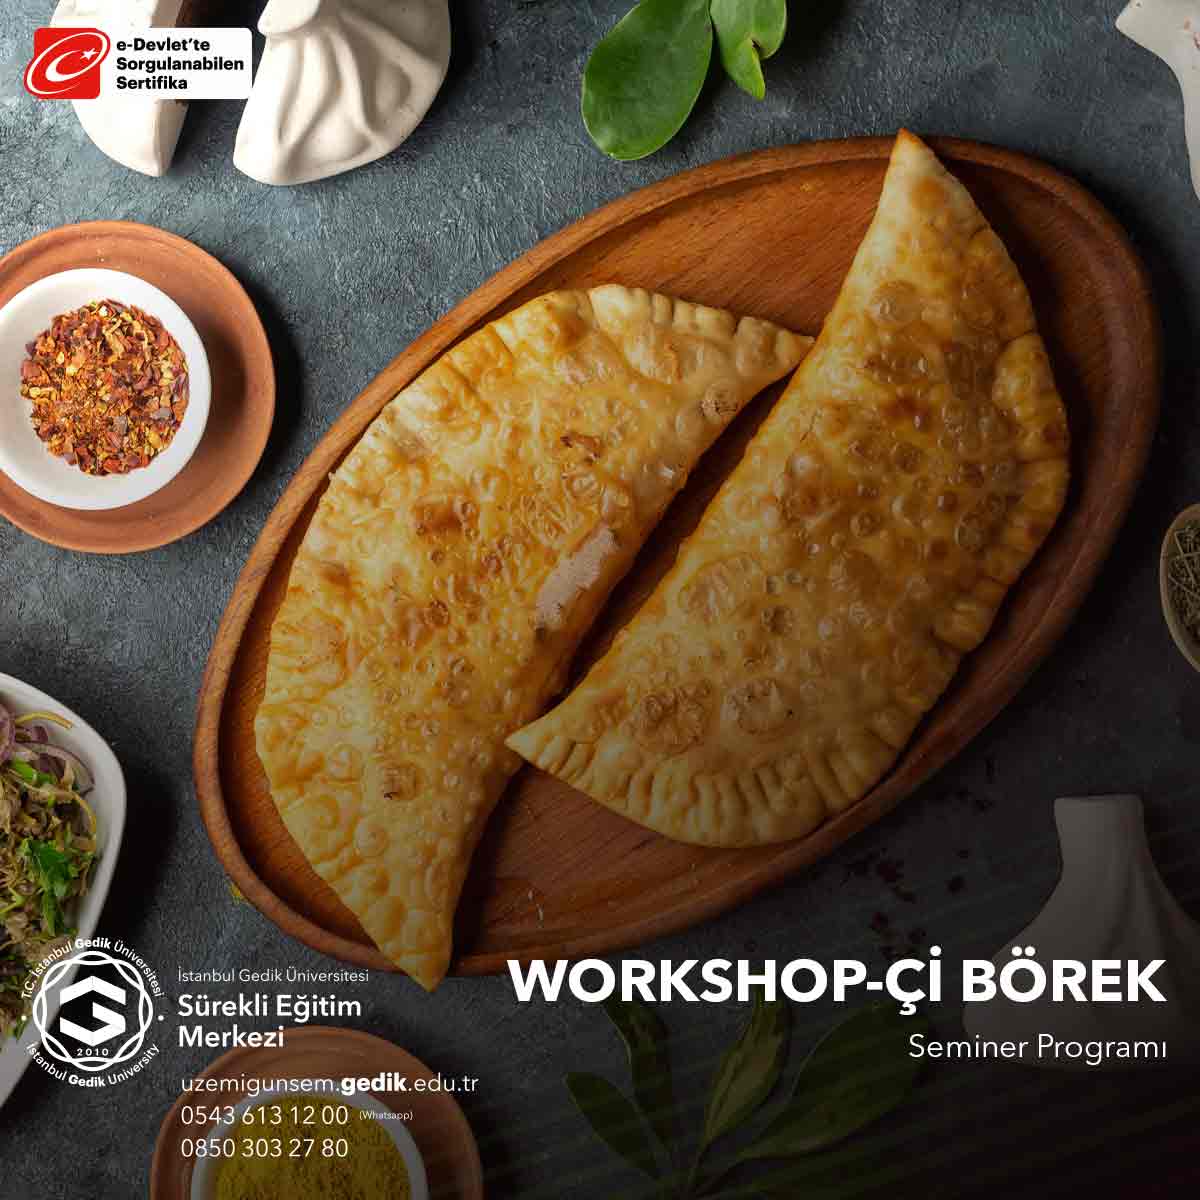 "Çi Börek Workshop," geleneksel bir Türk mutfağı lezzeti olan "Çi Börek" yapma seminerini ifade eder.